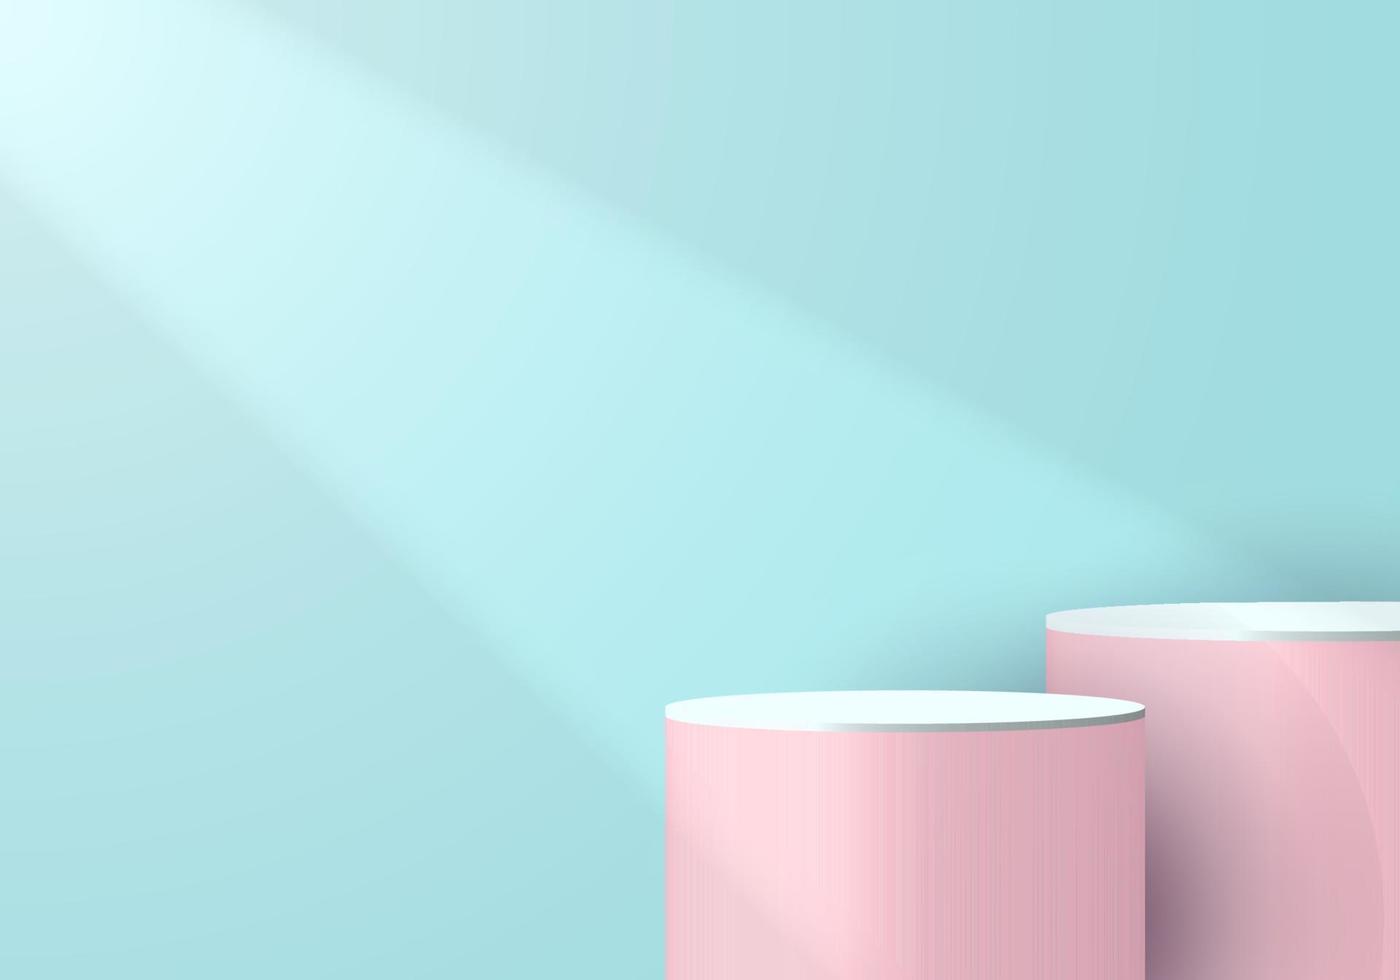 3d roze en wit cilindervoetstuk in zachte blauwe lege ruimte met licht en schaduwachtergrond vector